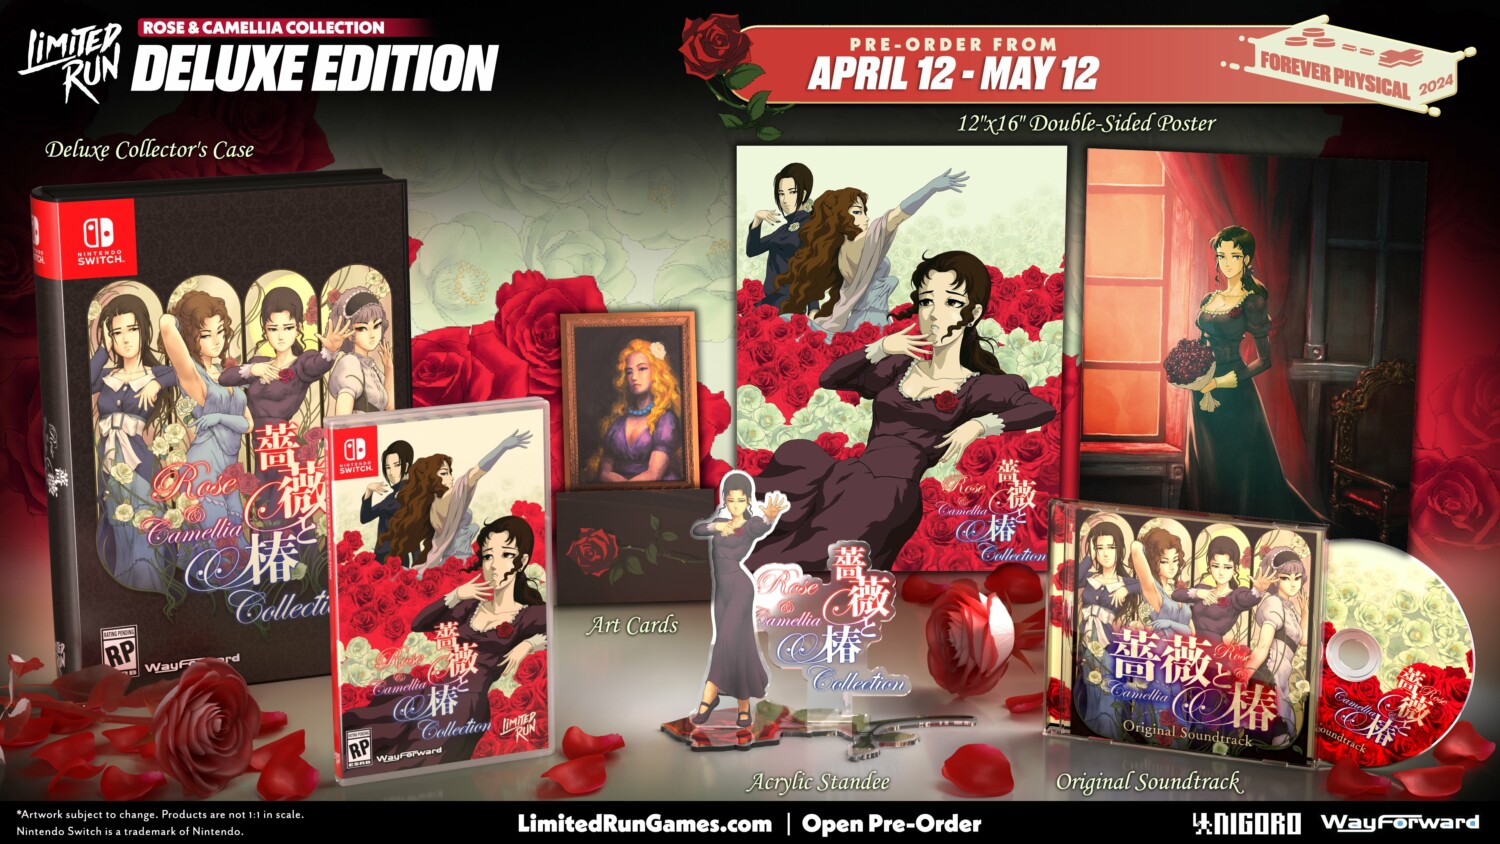 Rose & Camellia Collection llegará a Nintendo Switch el 16 de abril 4